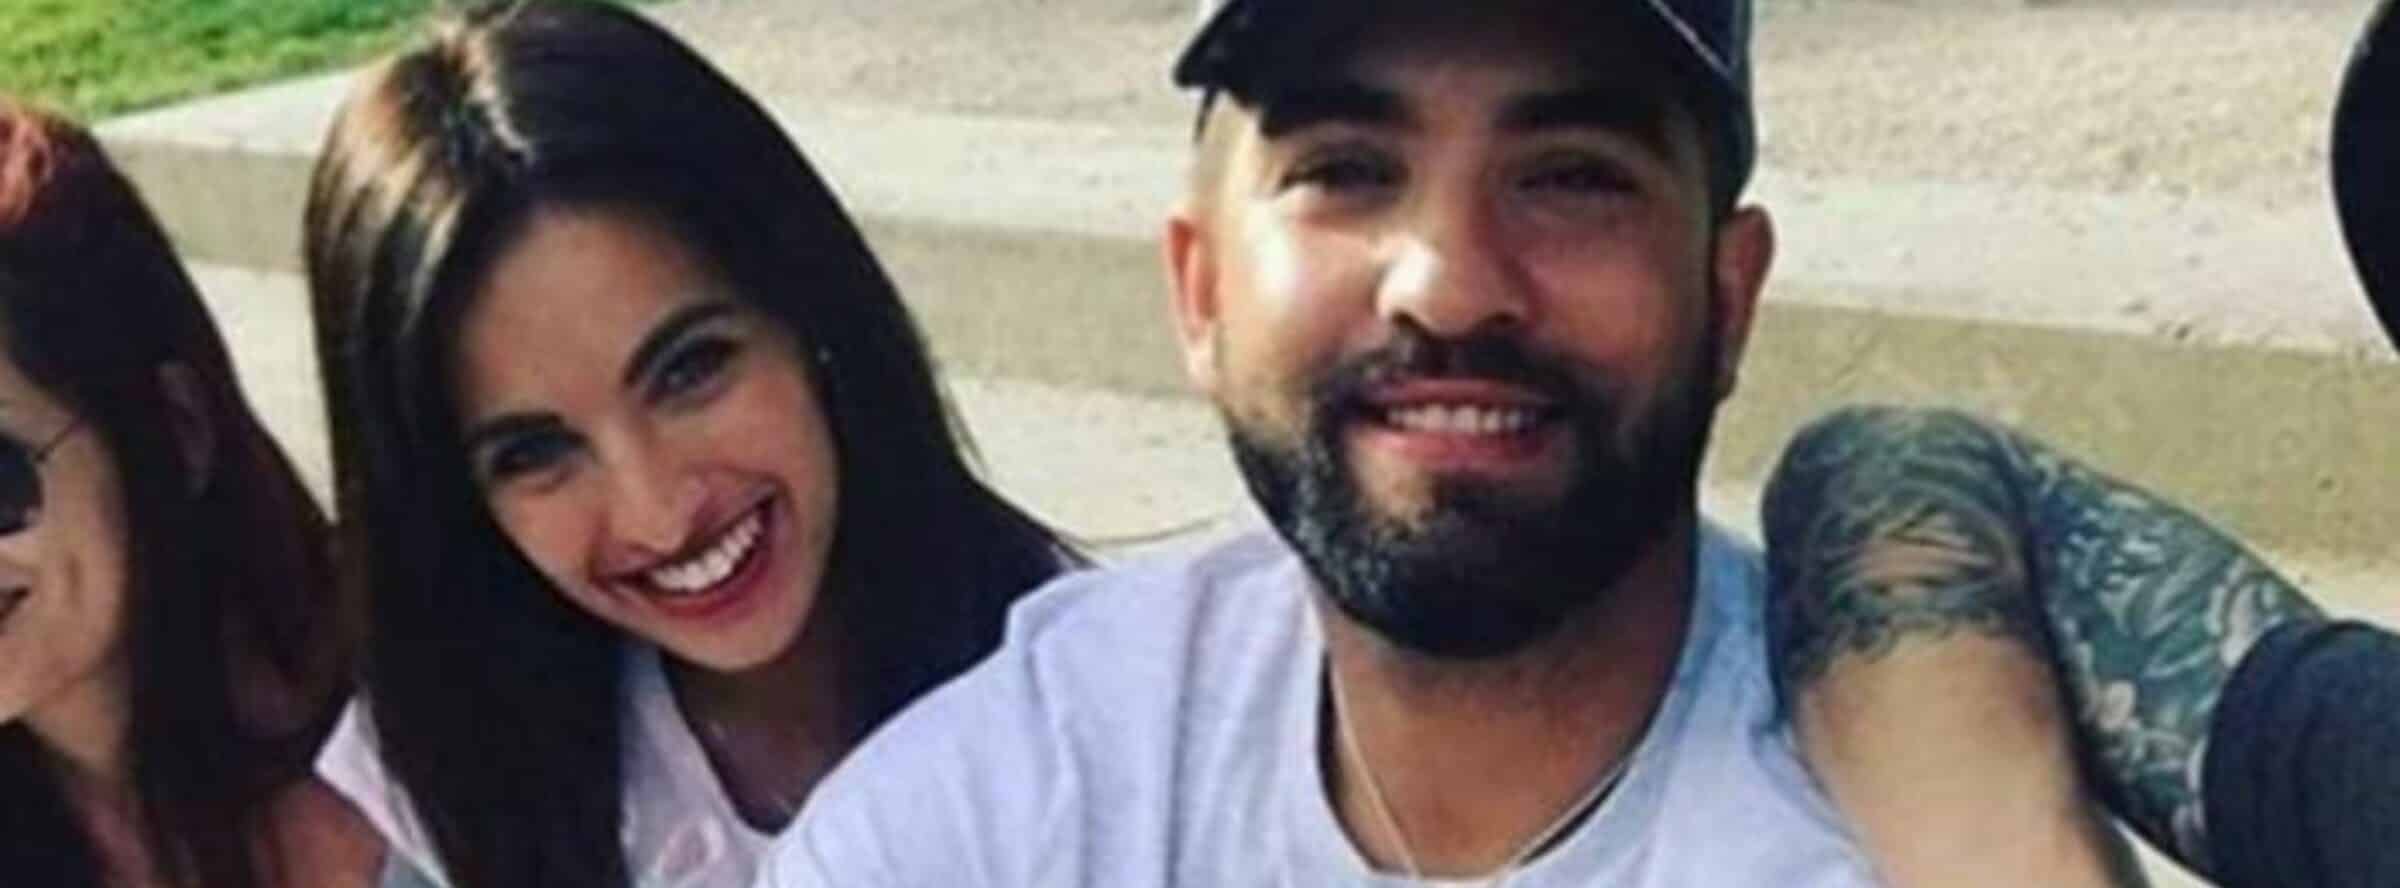 Kendji Girac blessé par balle : les confidences de sa femme Soraya aux policiers